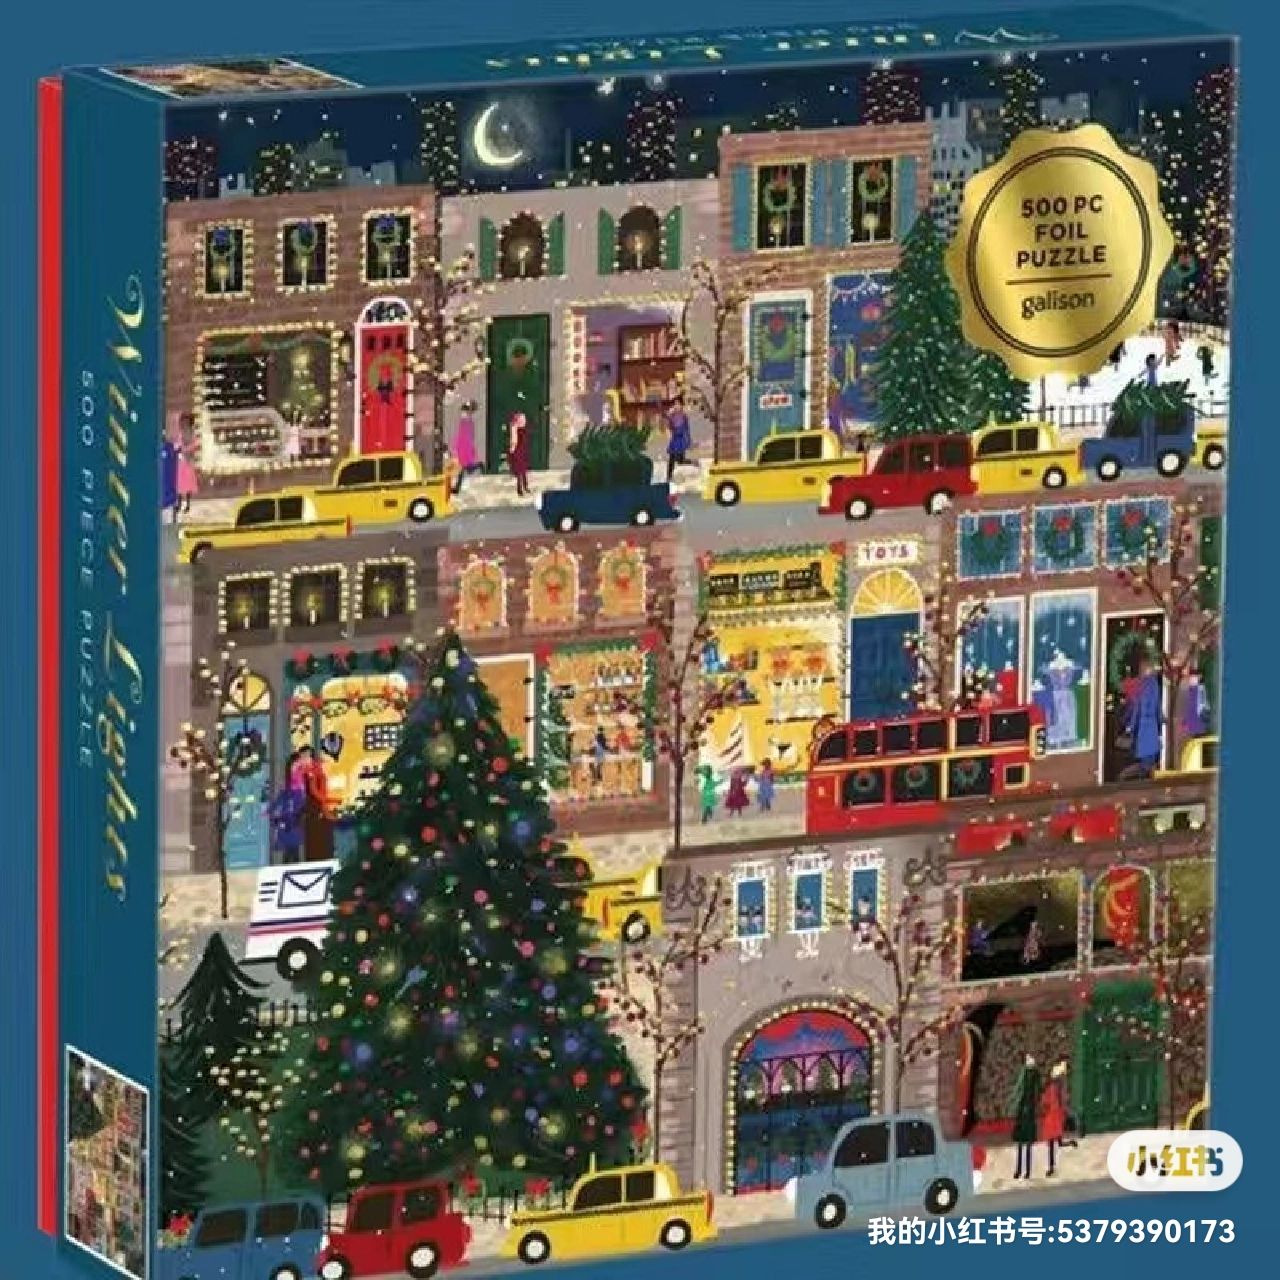 冬灯拼图500片Galison圣诞节日之夜拼图玩具高品质现货图